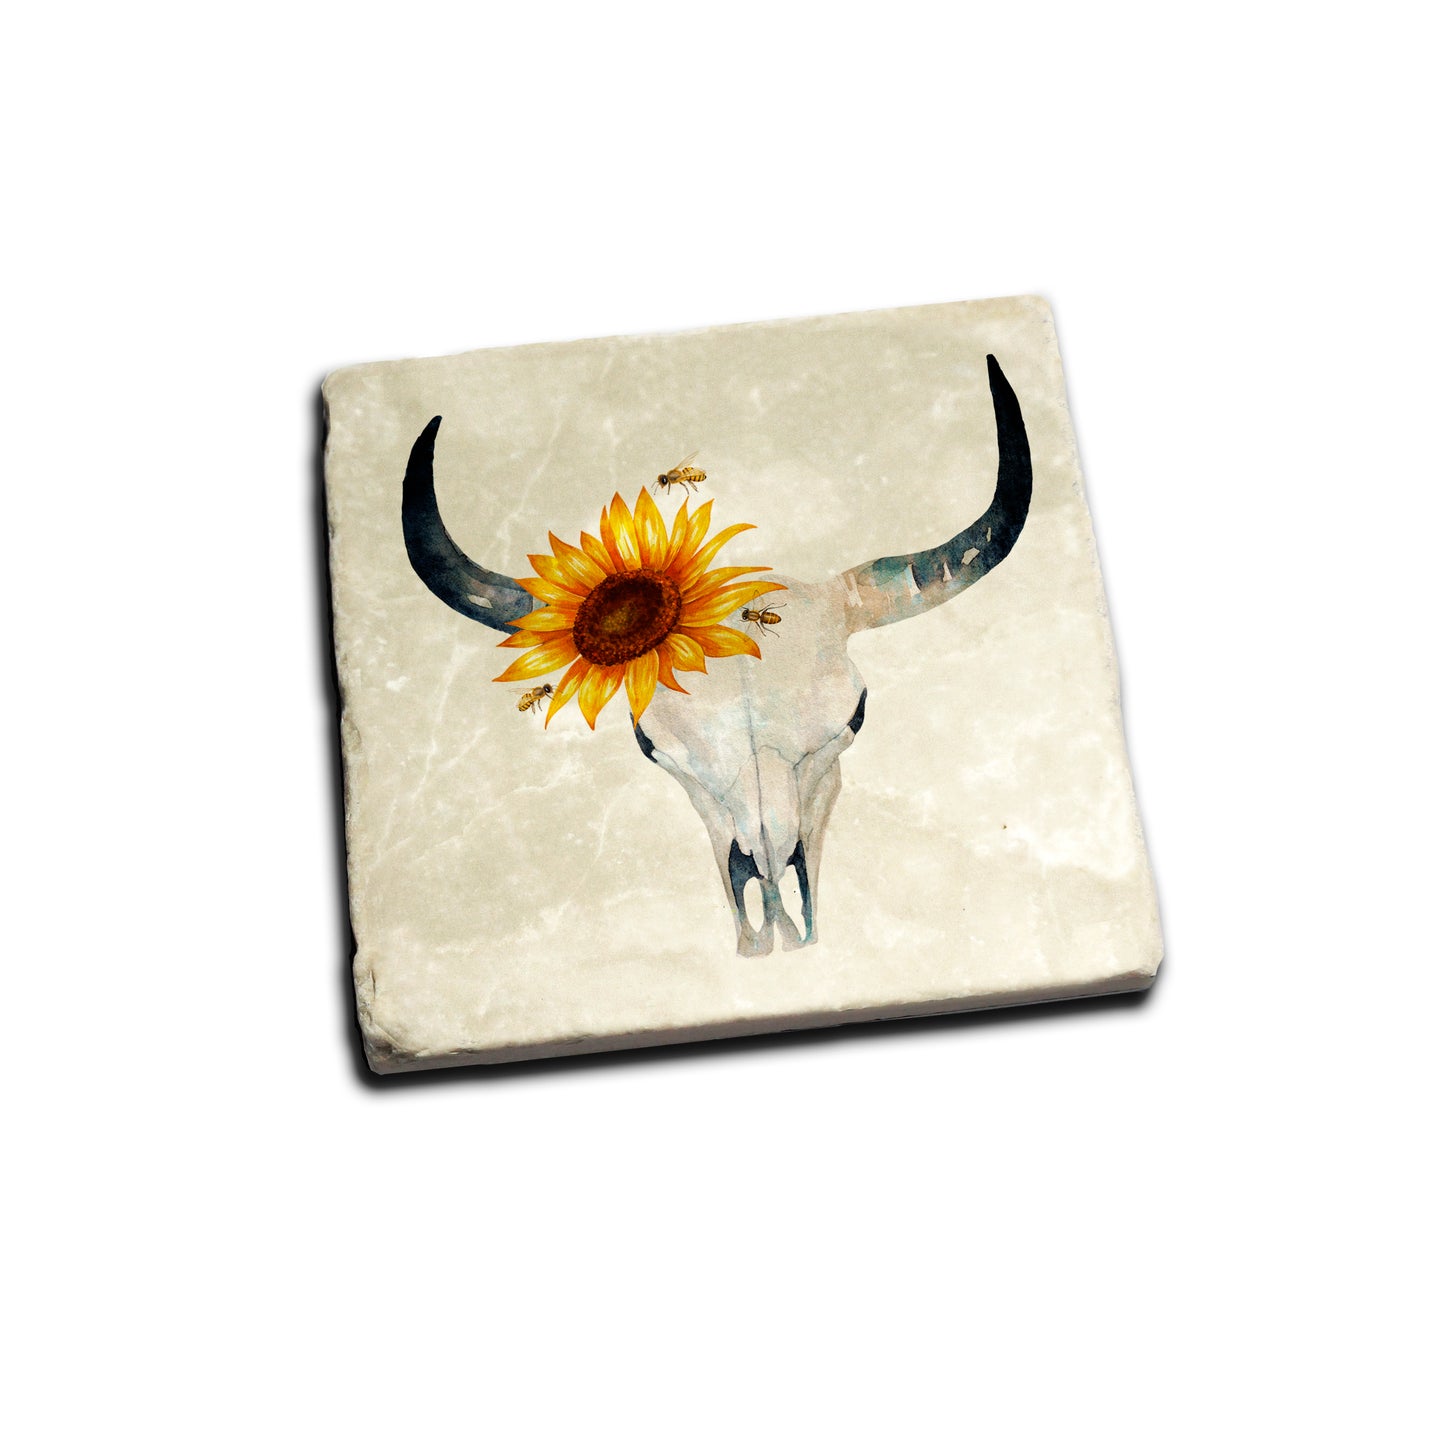 Sunflower Skull Coaster